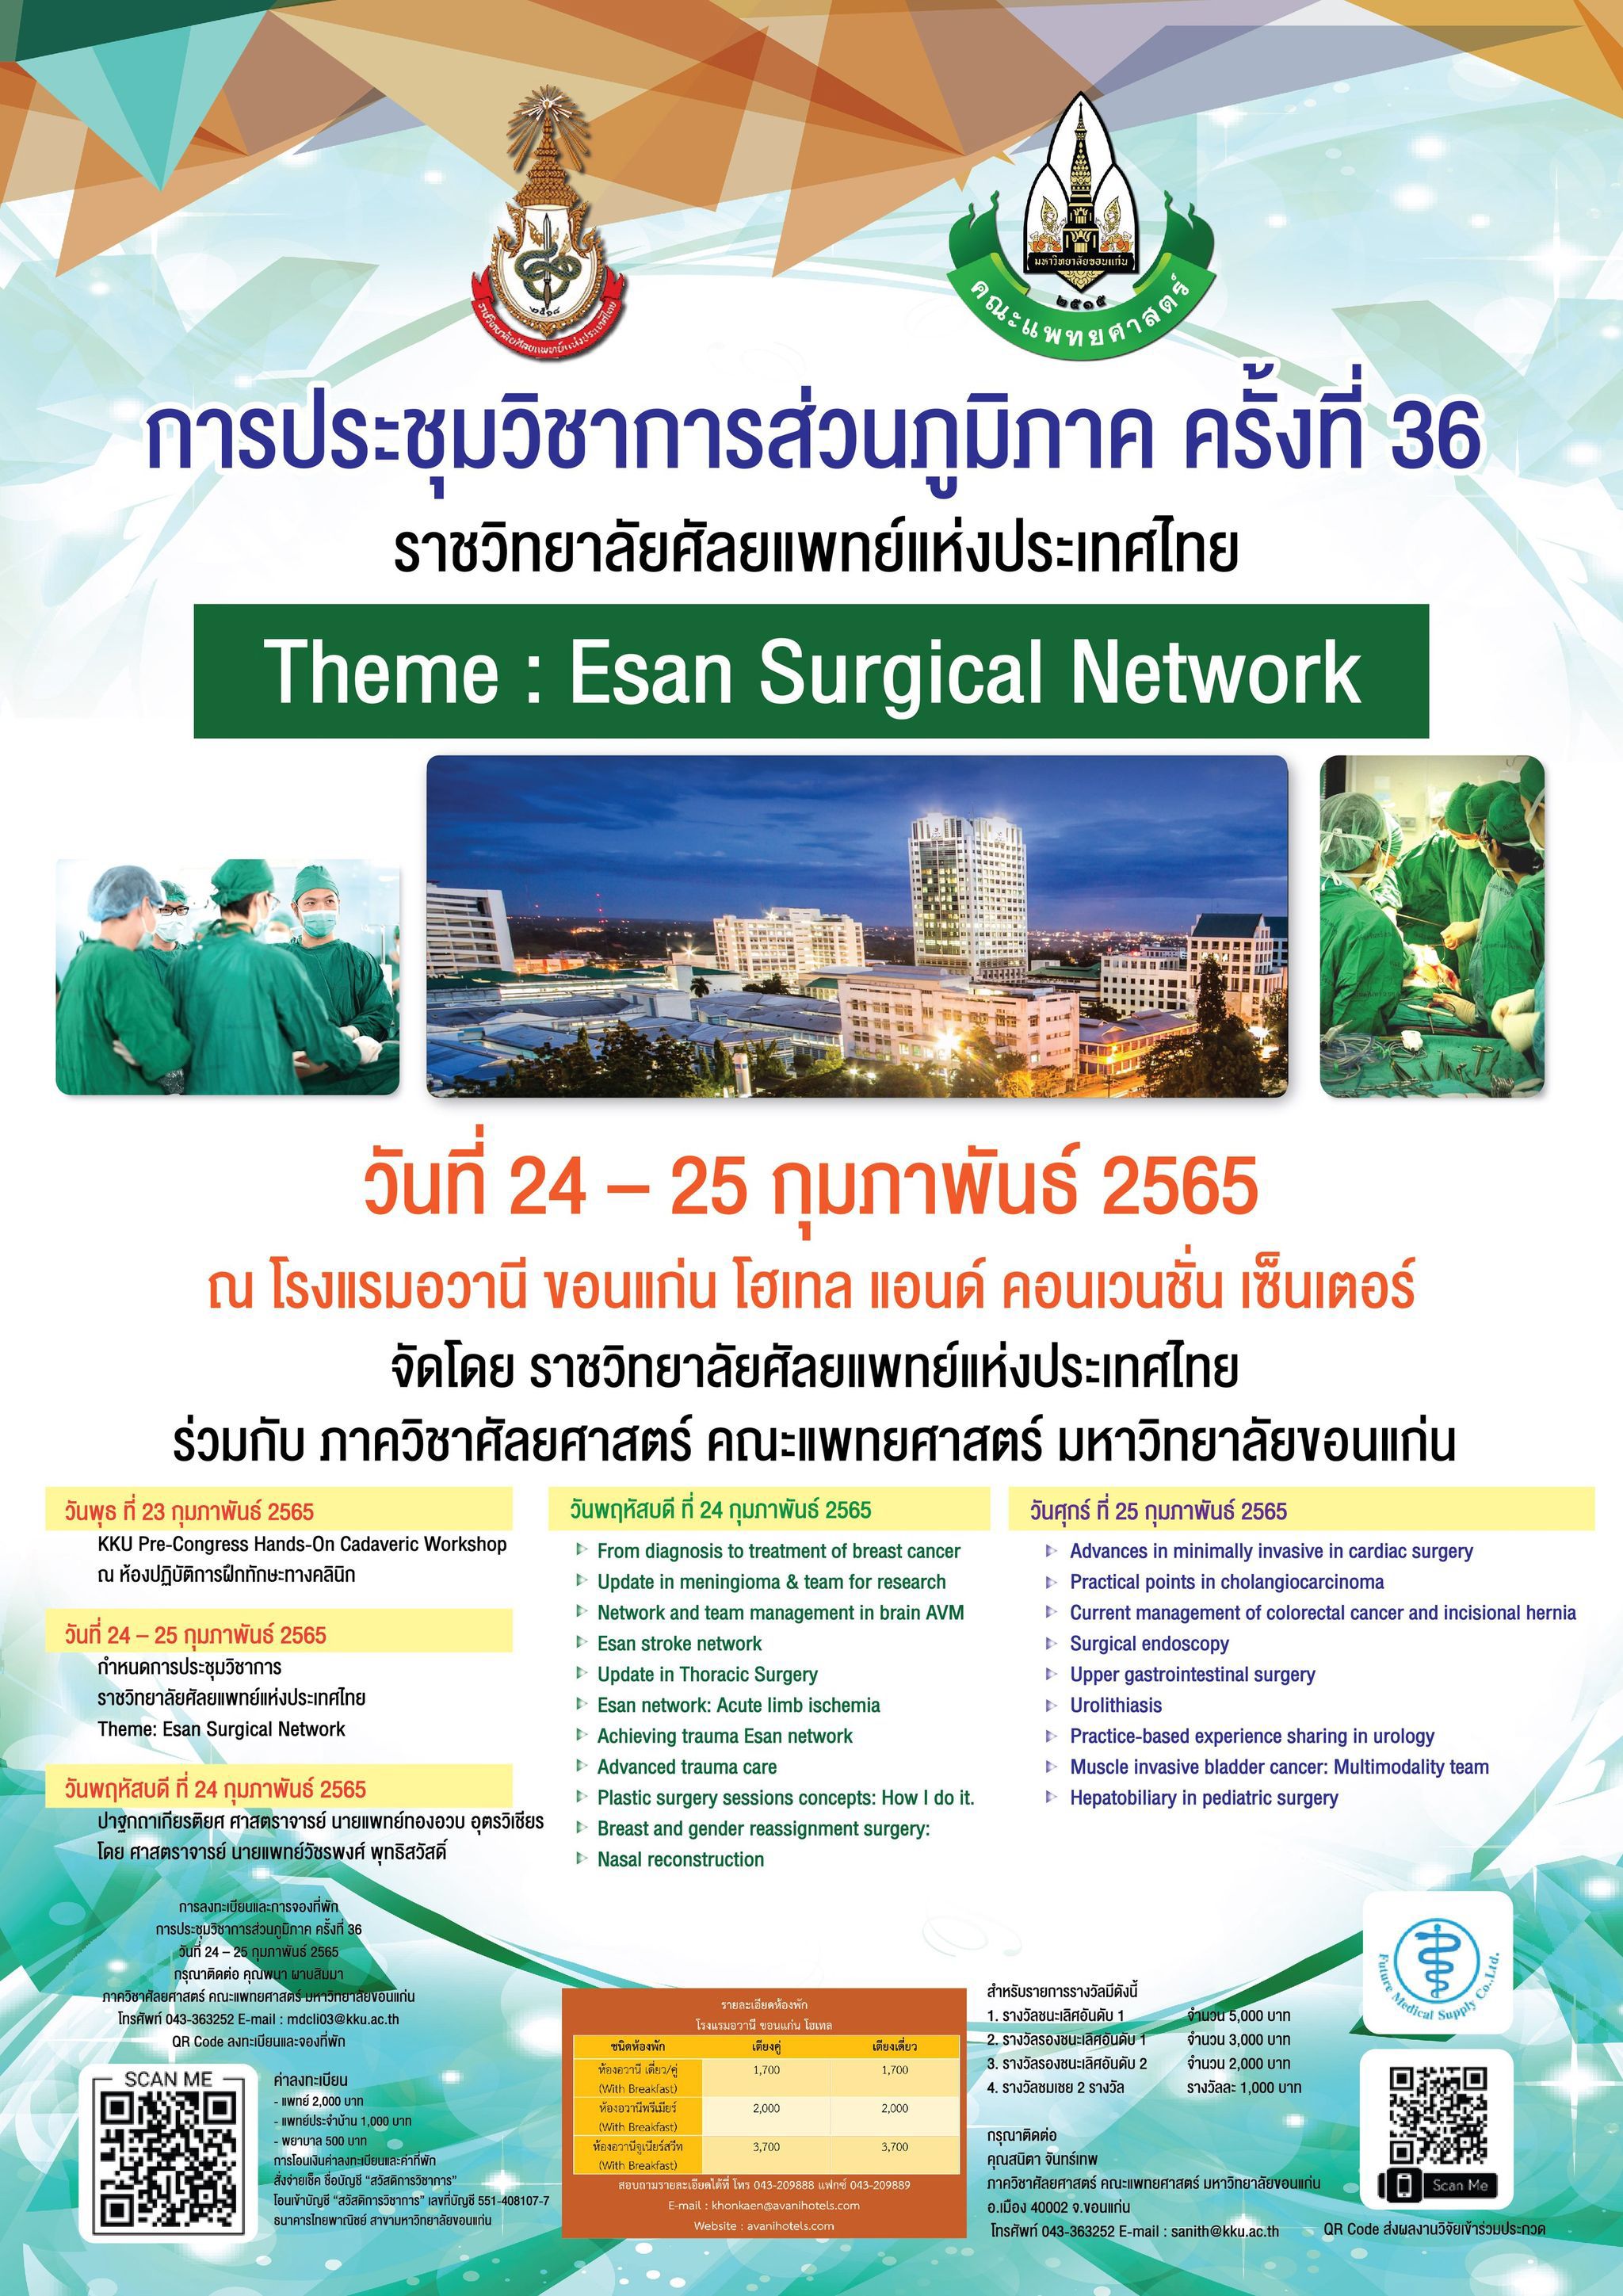 การประชุมวิชาการส่วนภูมิภาค ครั้งที่ 36 ราชวิทยาลัยศัลยแพทย์แห่งประเทศไทย